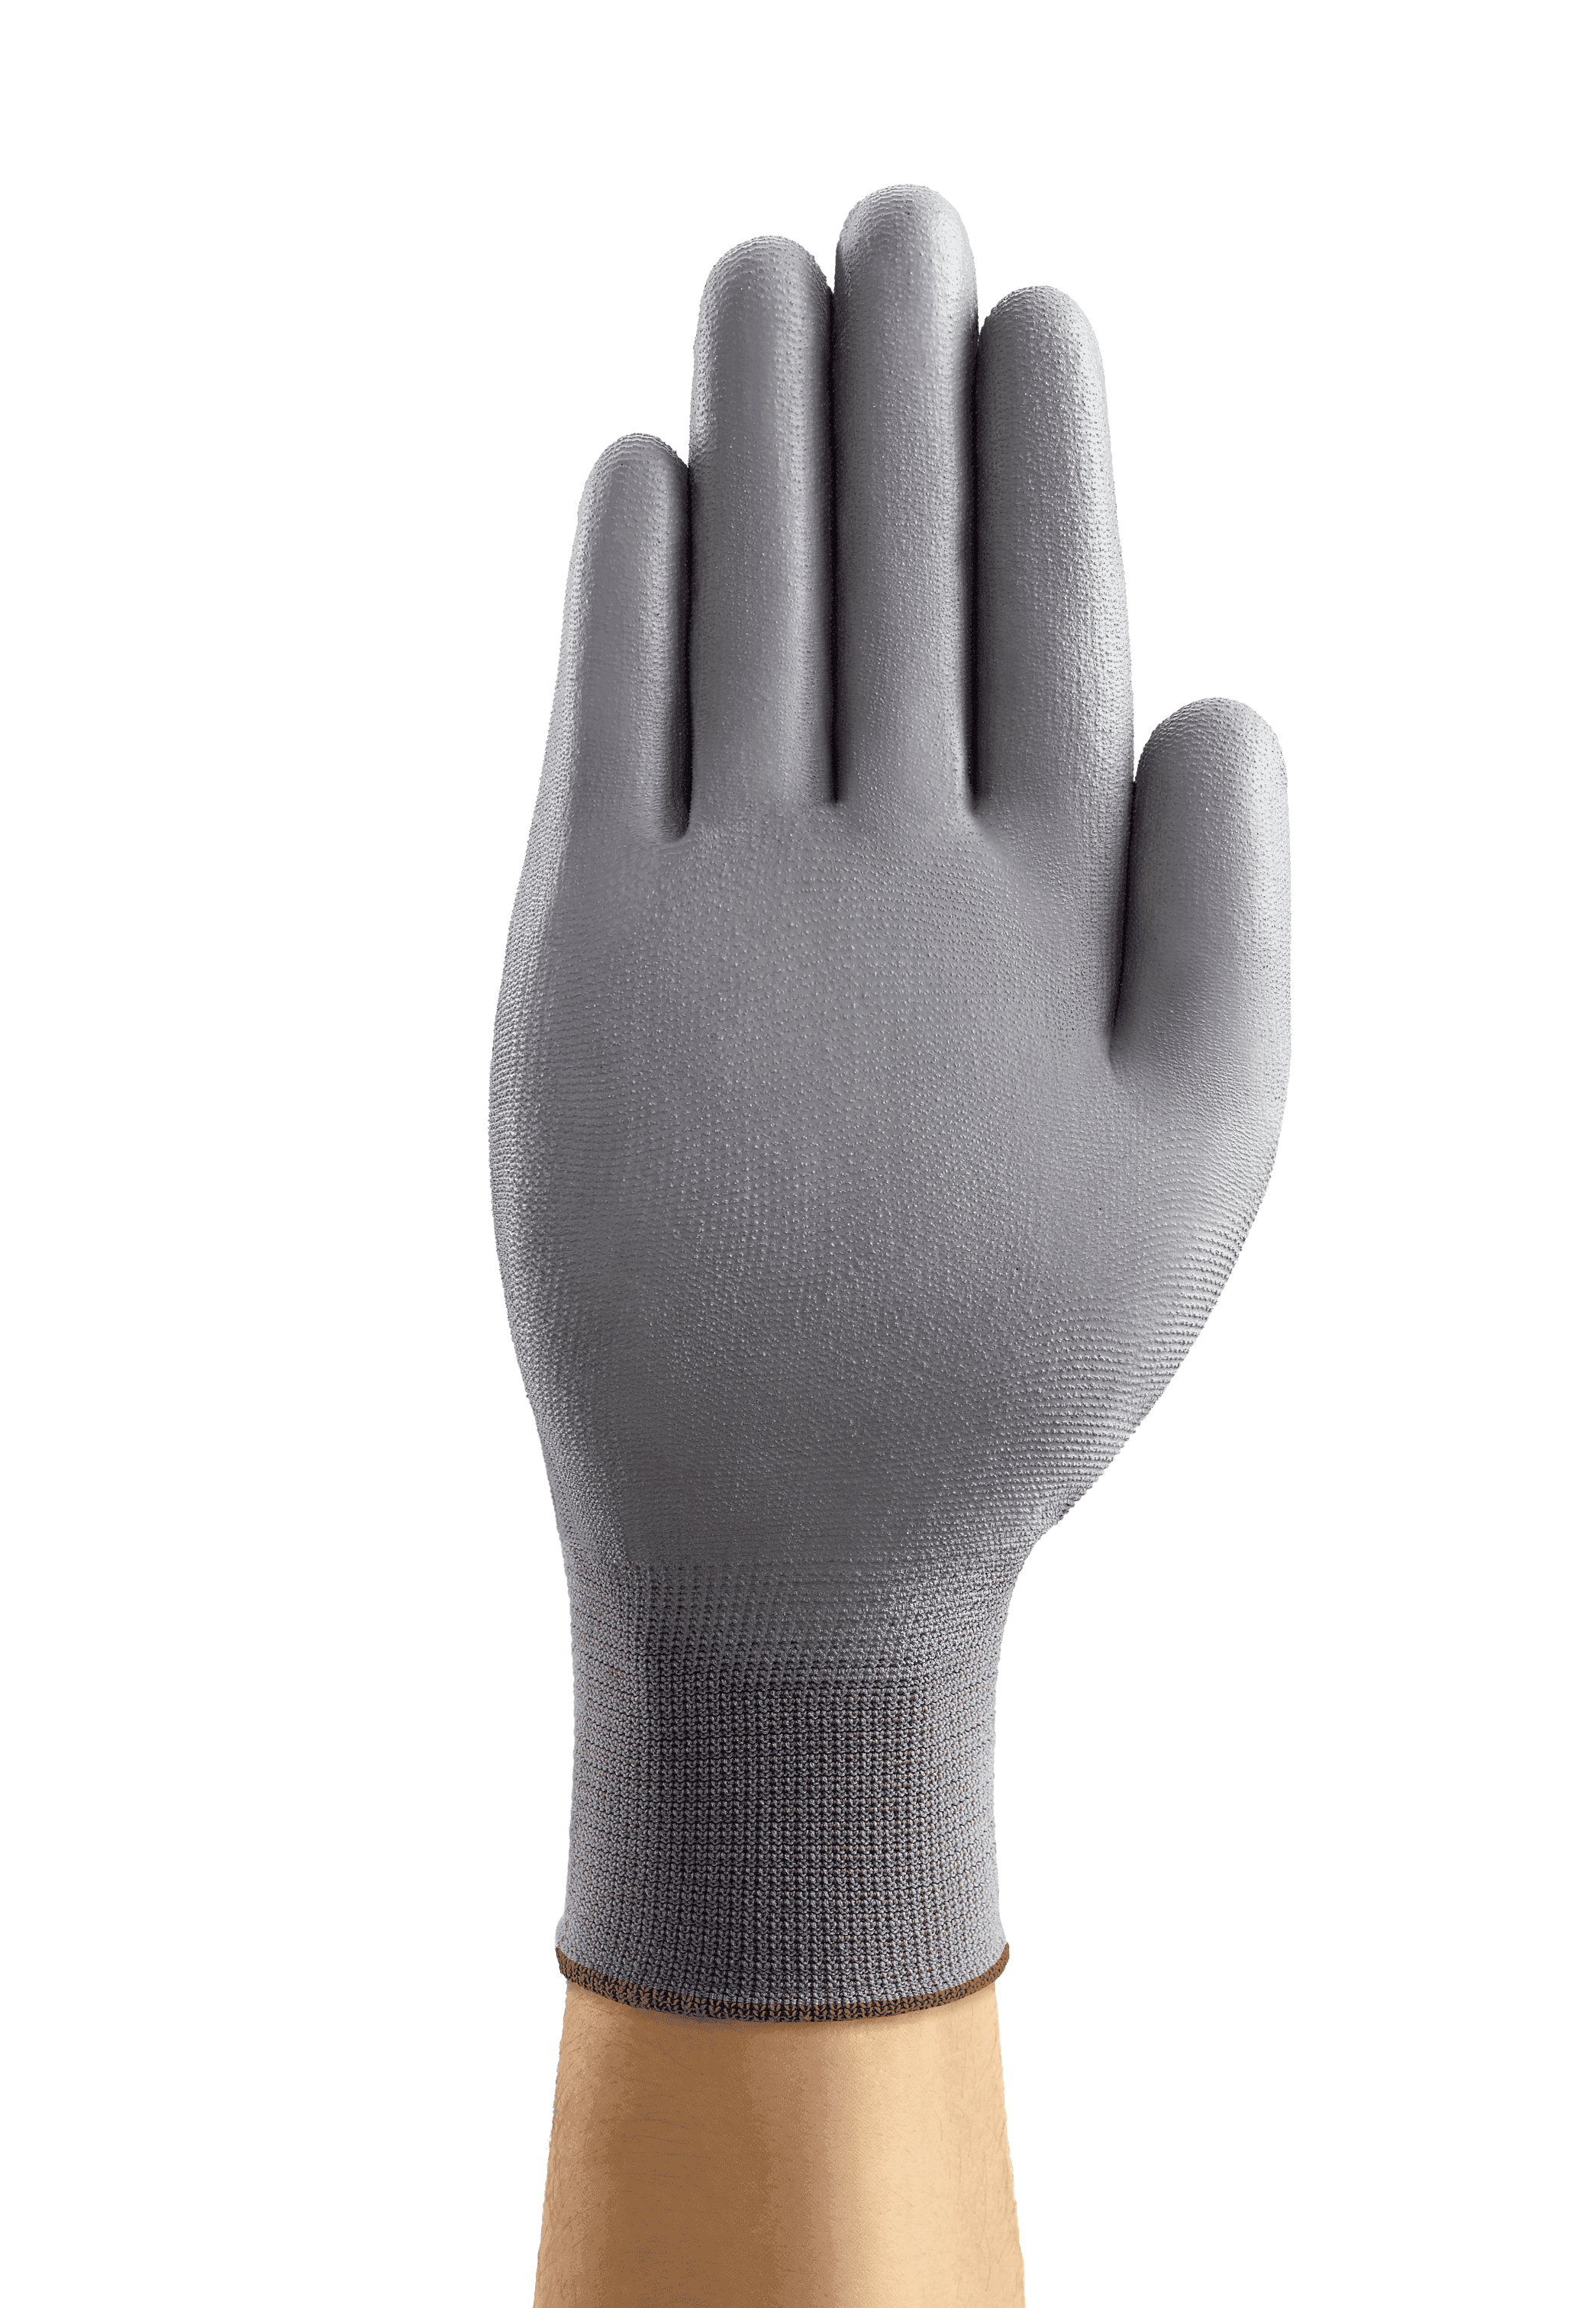 HyFlex 48-102 Safety Gloves - 12 Pairs